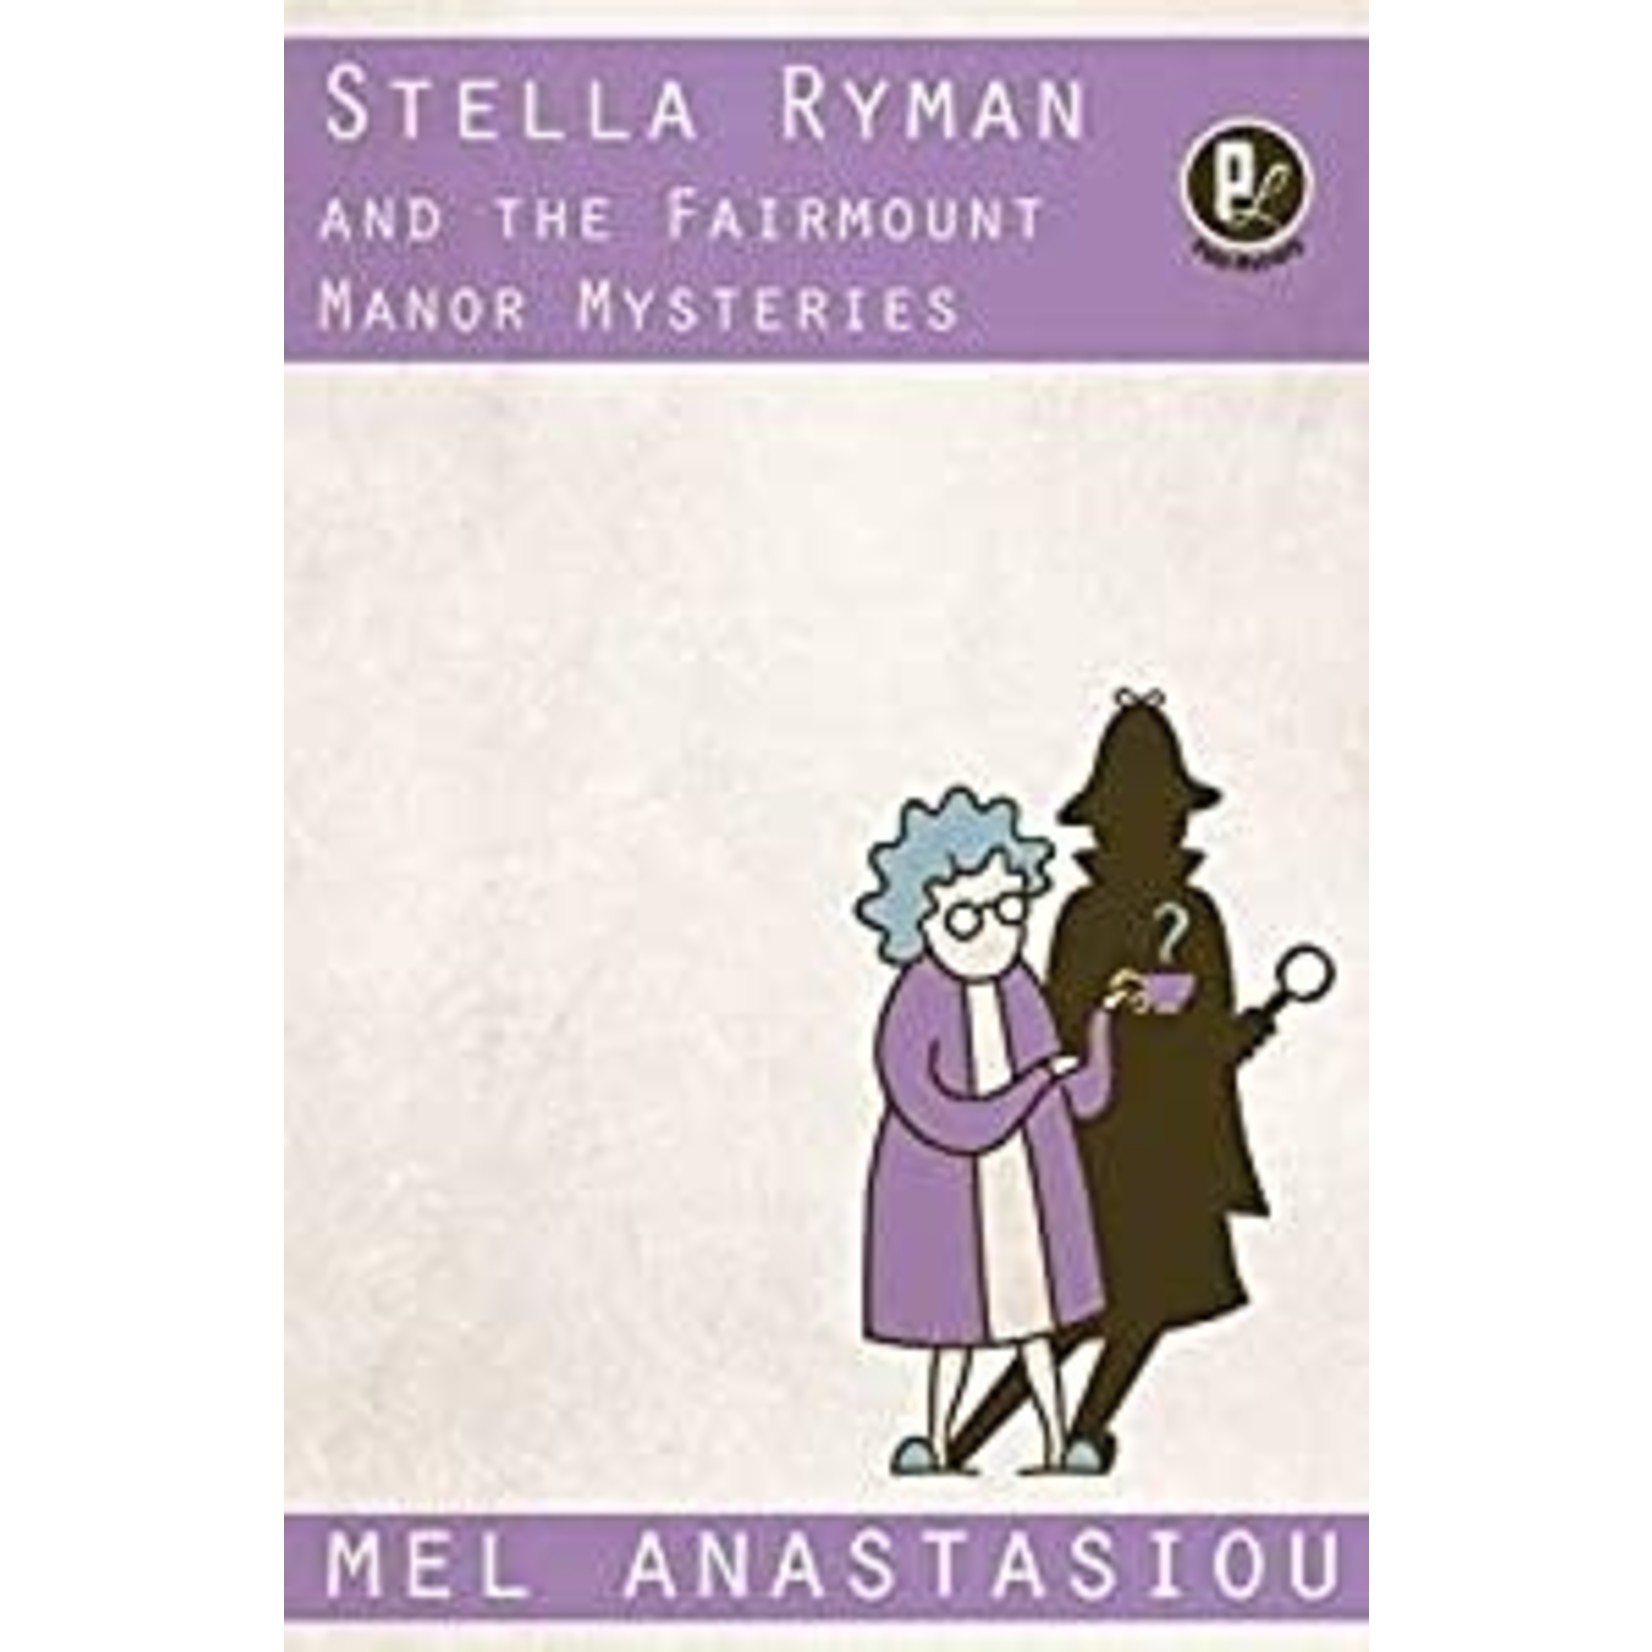 Anastasiou, Mel Anastasiou, Mel - Stella Ryman and the Fairmount Manor Mysteries